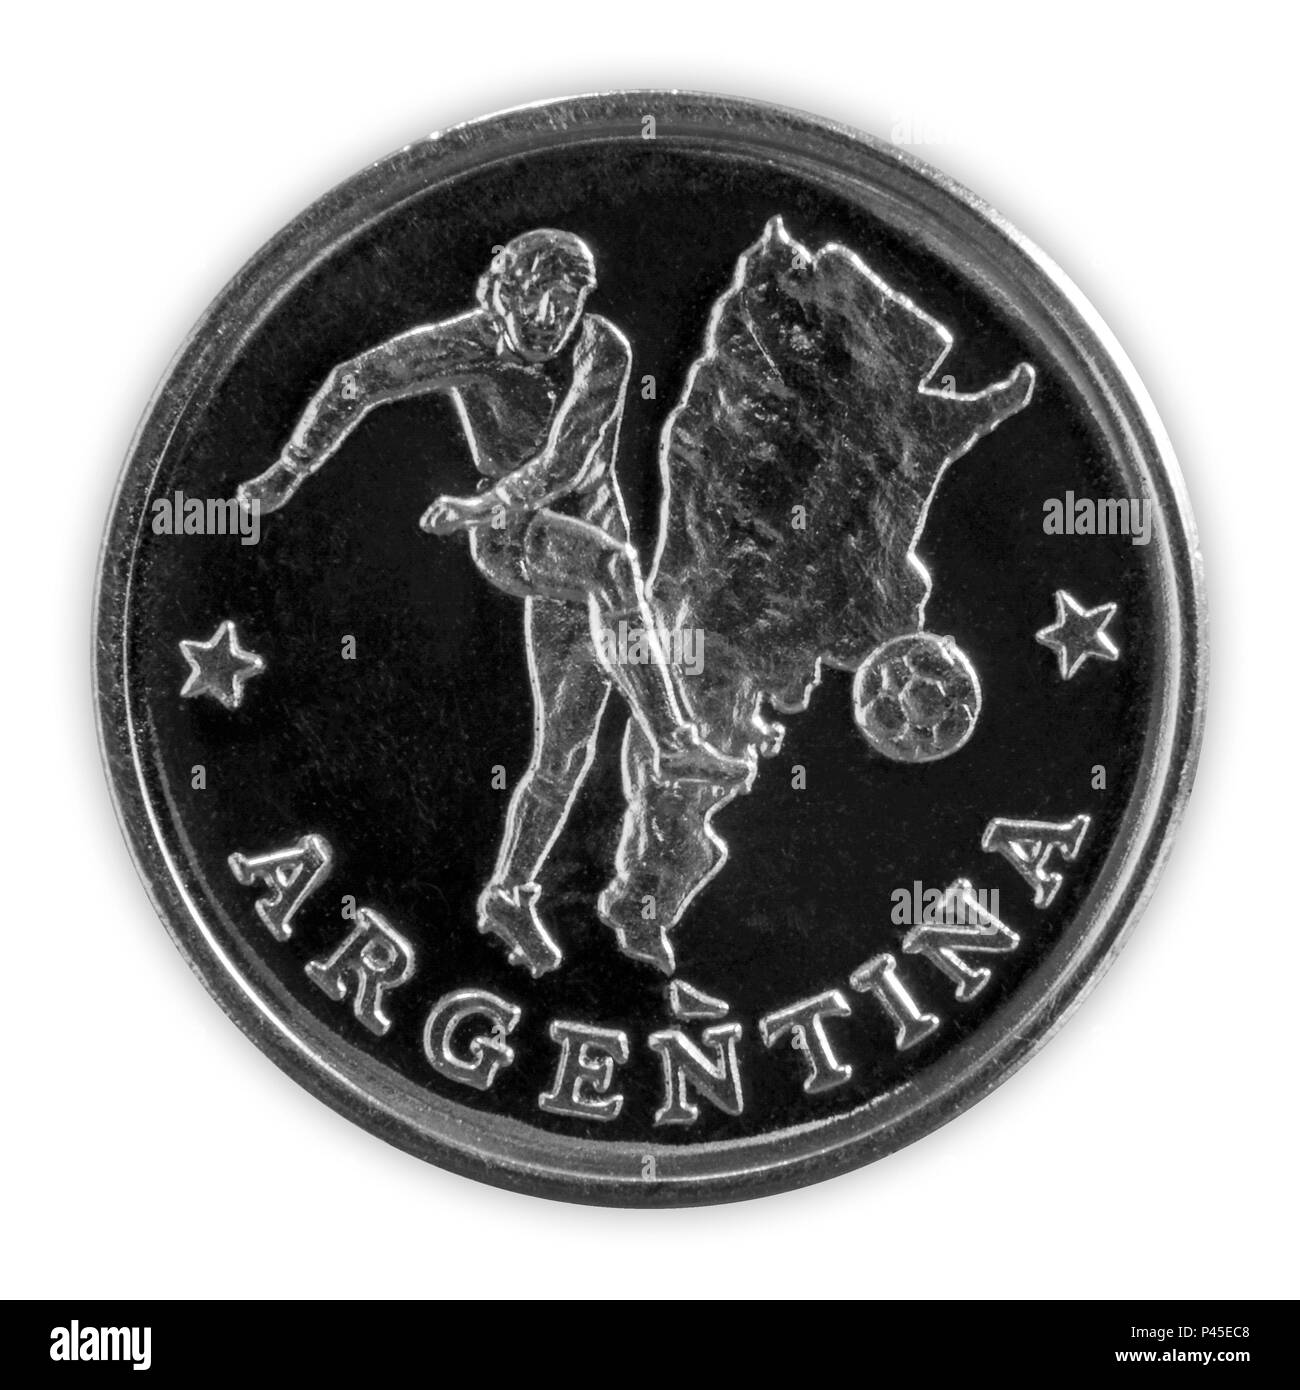 ARGENTINA - Giugno 18, 2018: FIFA World Cup - una moneta commemorativa con un giocatore di football nel team argentino, intitolato Argentina, con una mappa di Ar Foto Stock